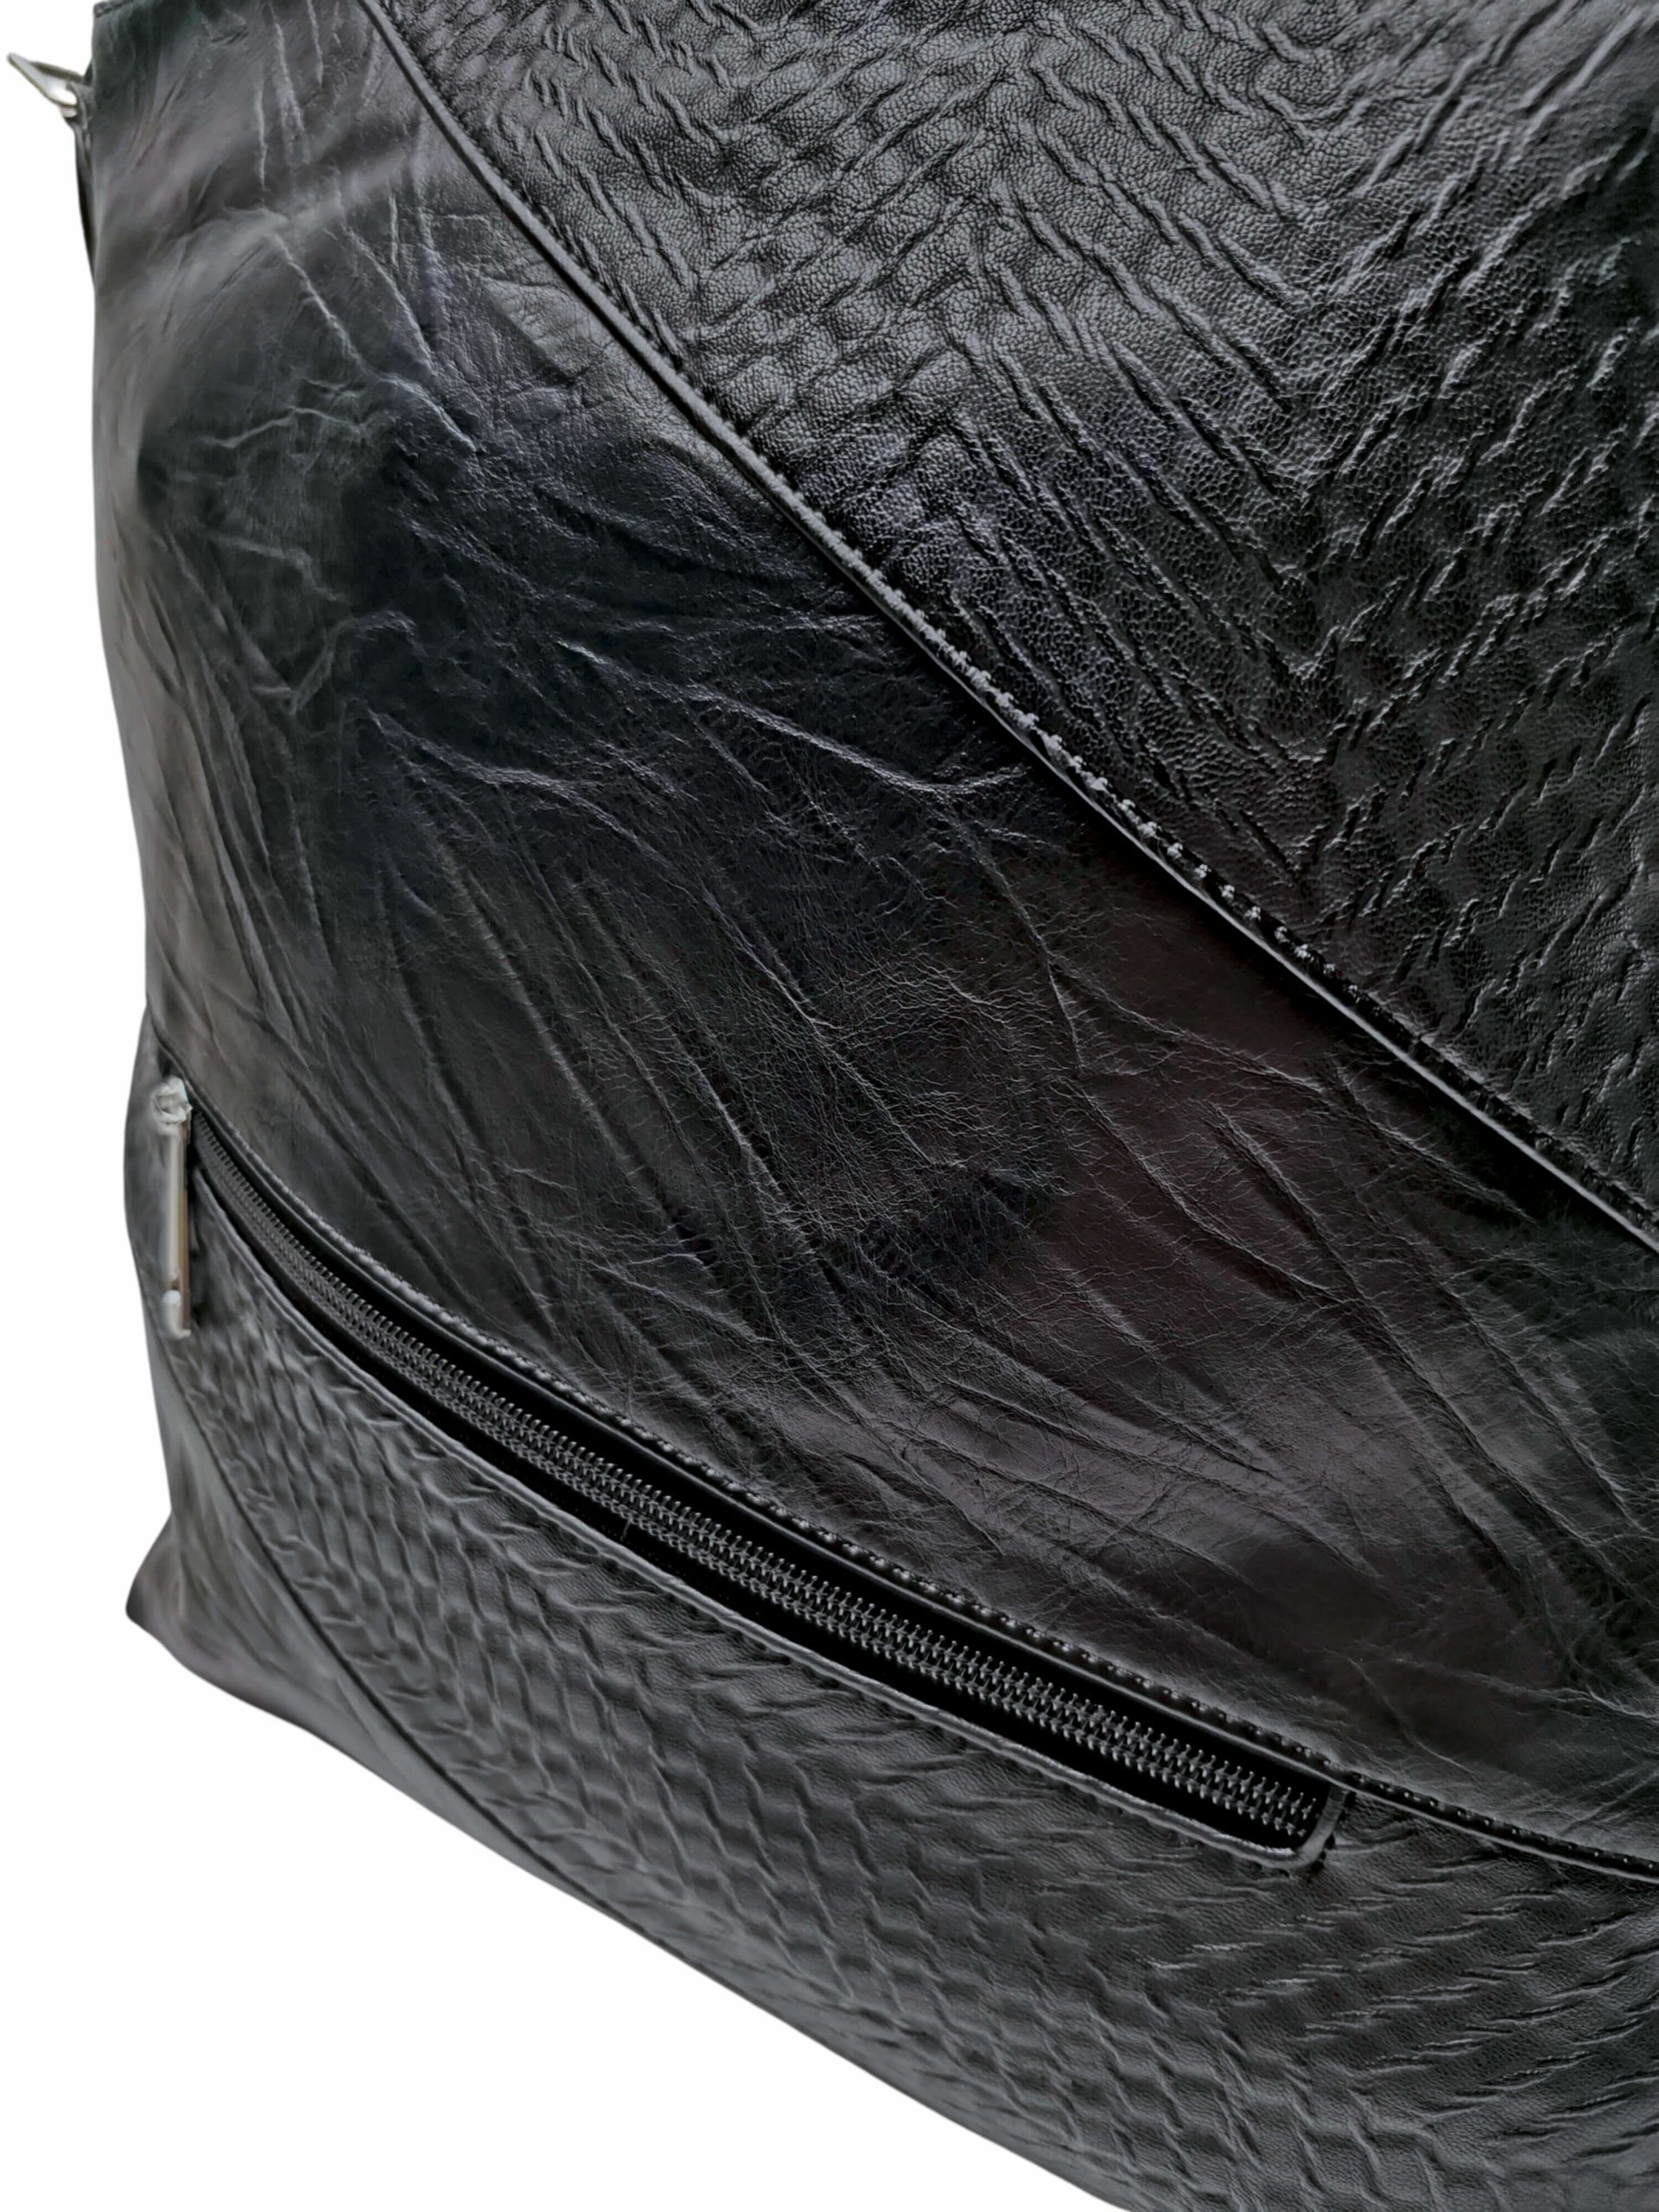 Velká černá crossbody kabelka se slušivou texturou, Tapple, H17225, detail crossbody kabelky